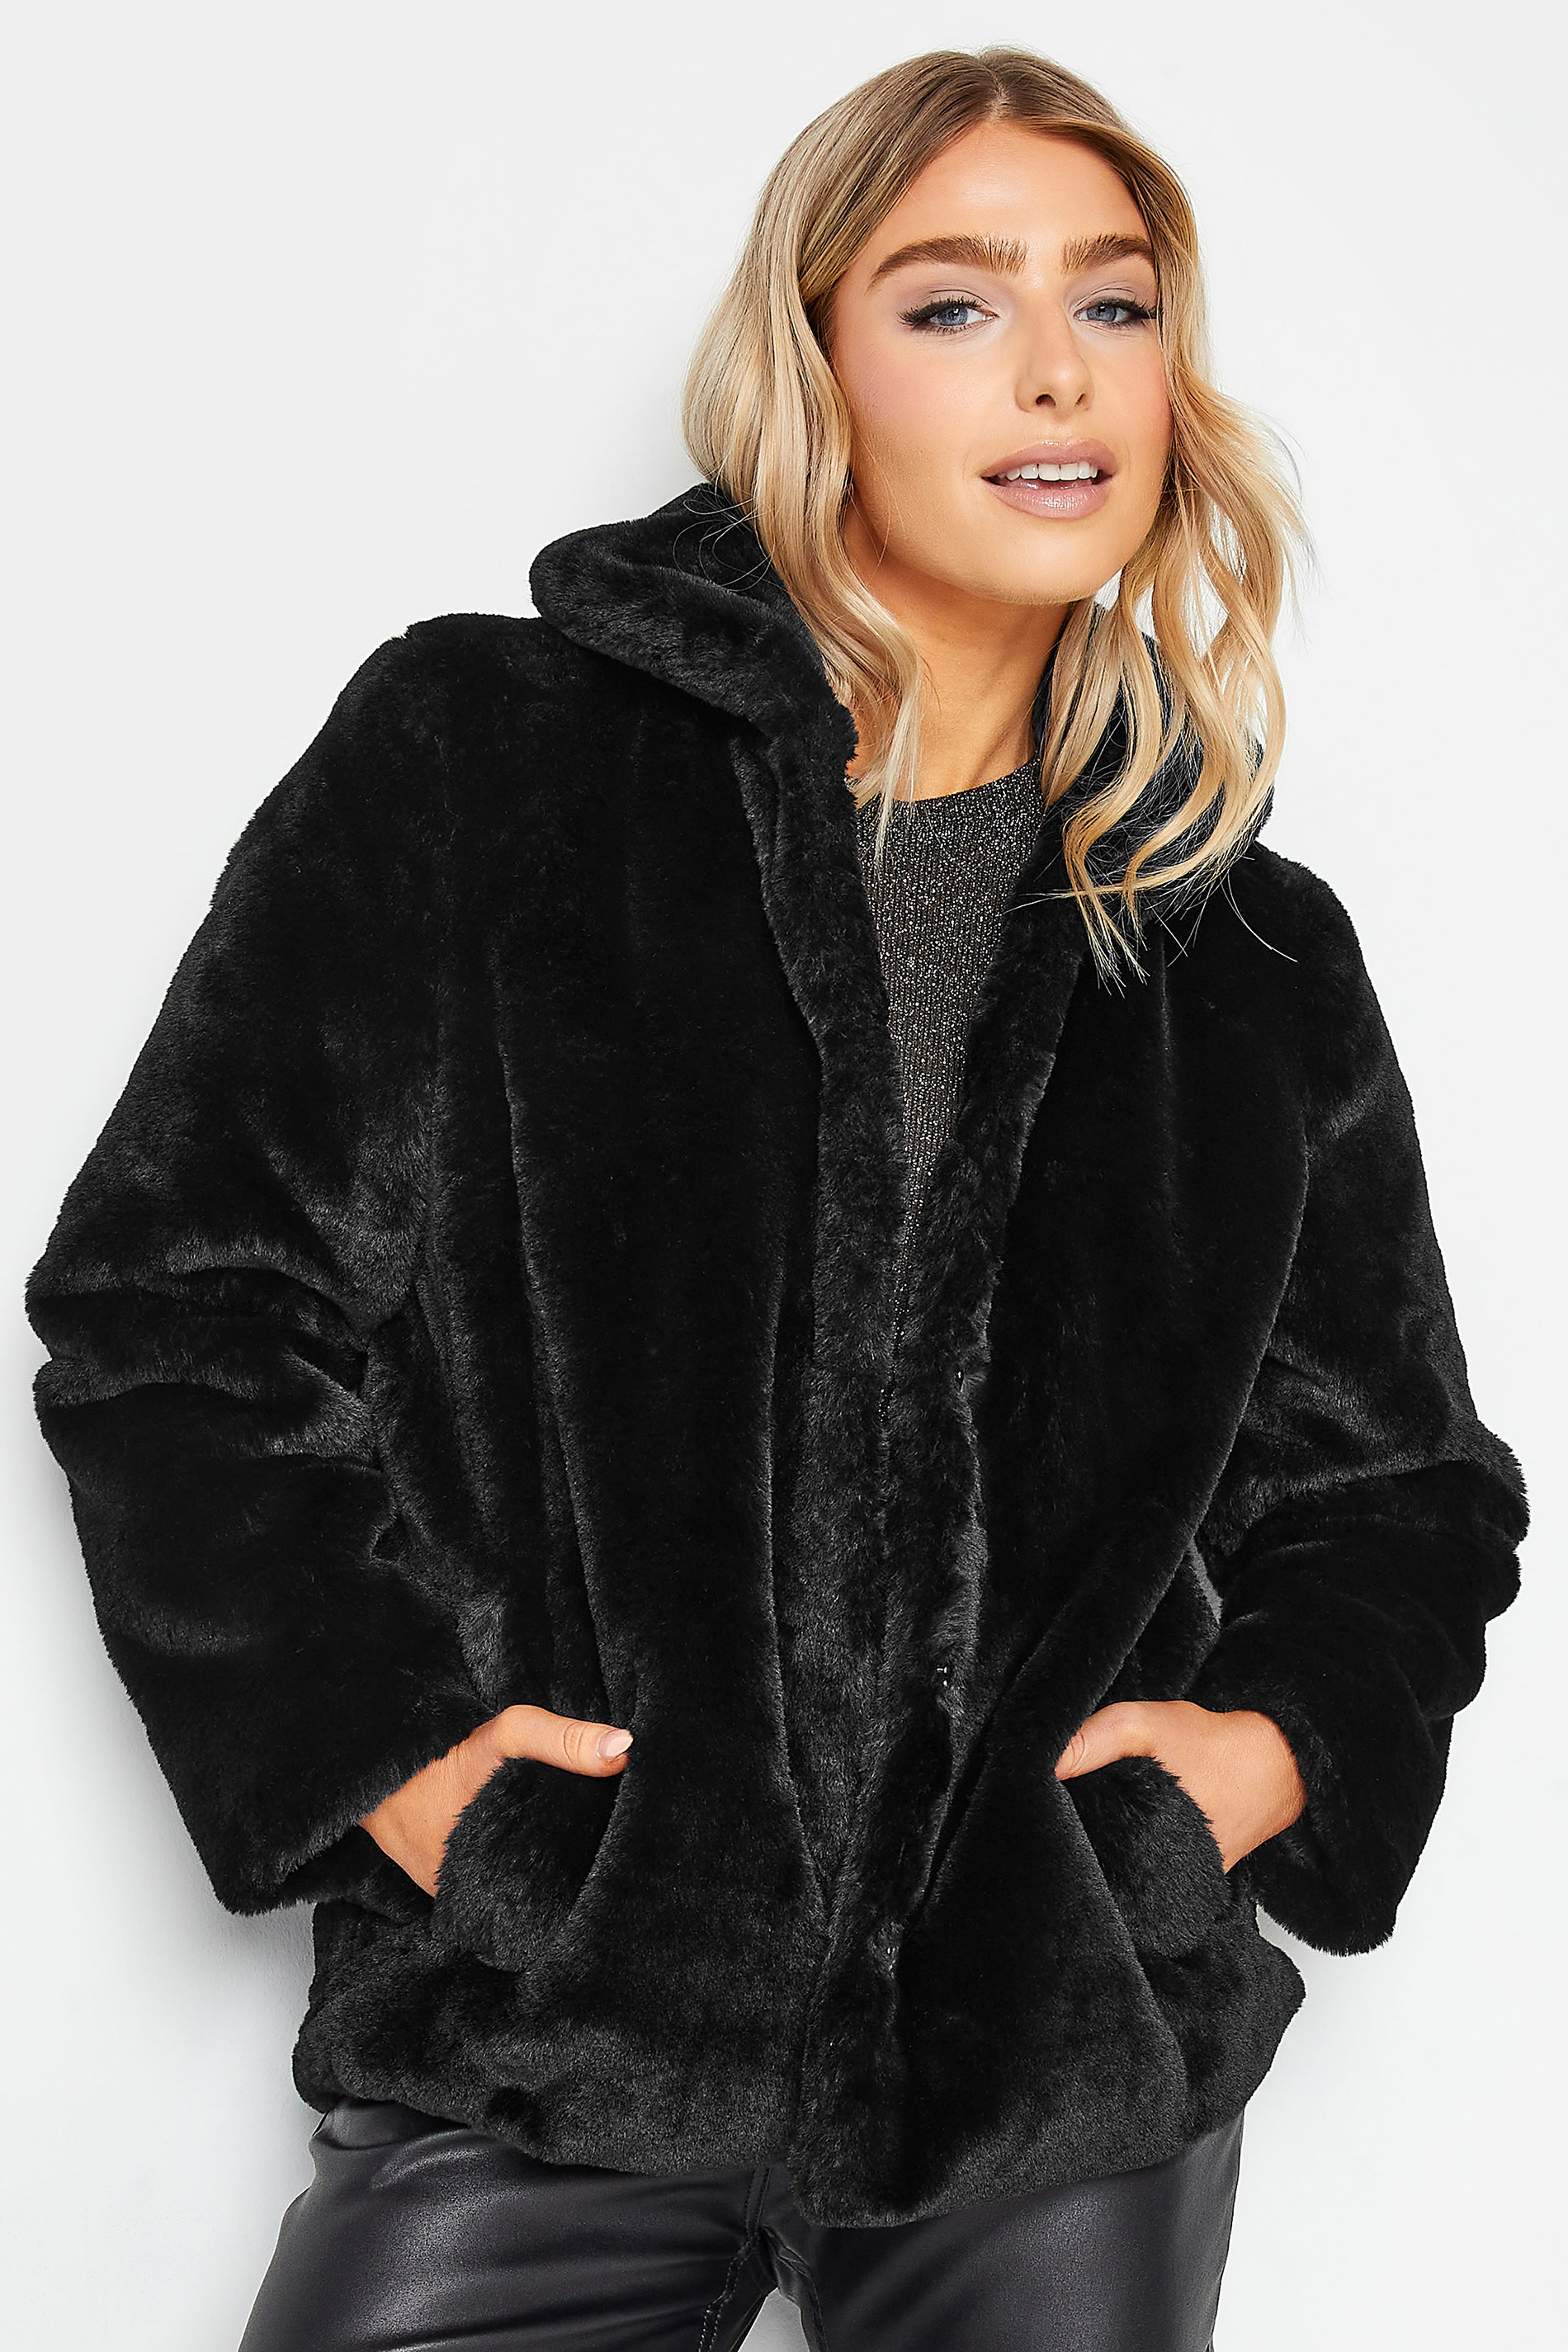 M&Co Black Faux Fur Coat | M&Co 2